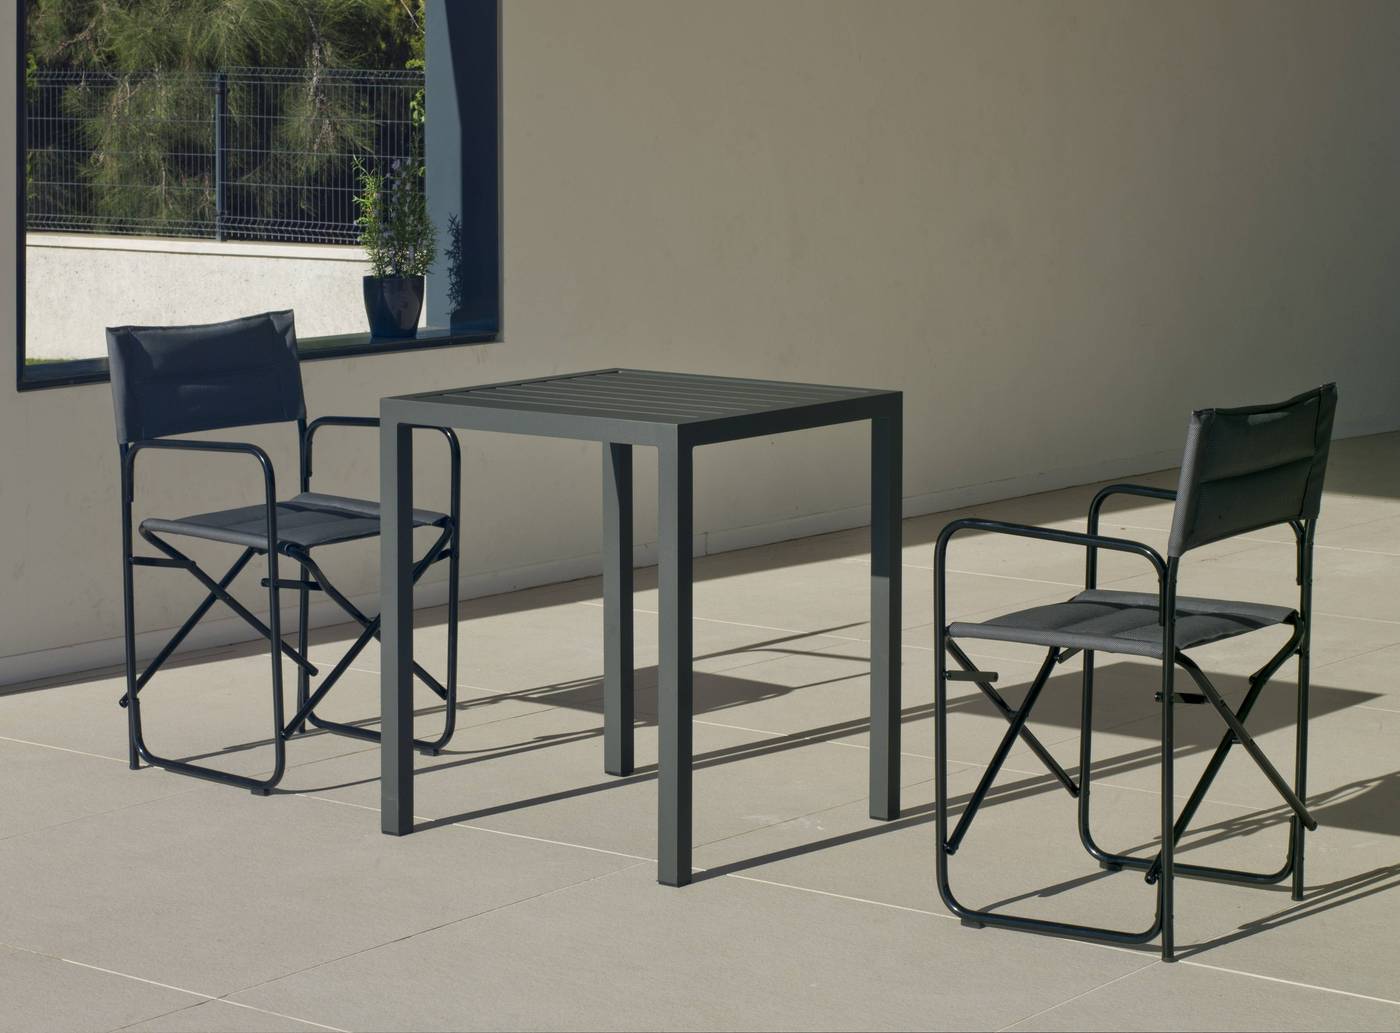 Conjunto aluminio luxe: Mesa cuadrada 65 cm + 2 sillones plegables. Disponible en color blanco o antracita.